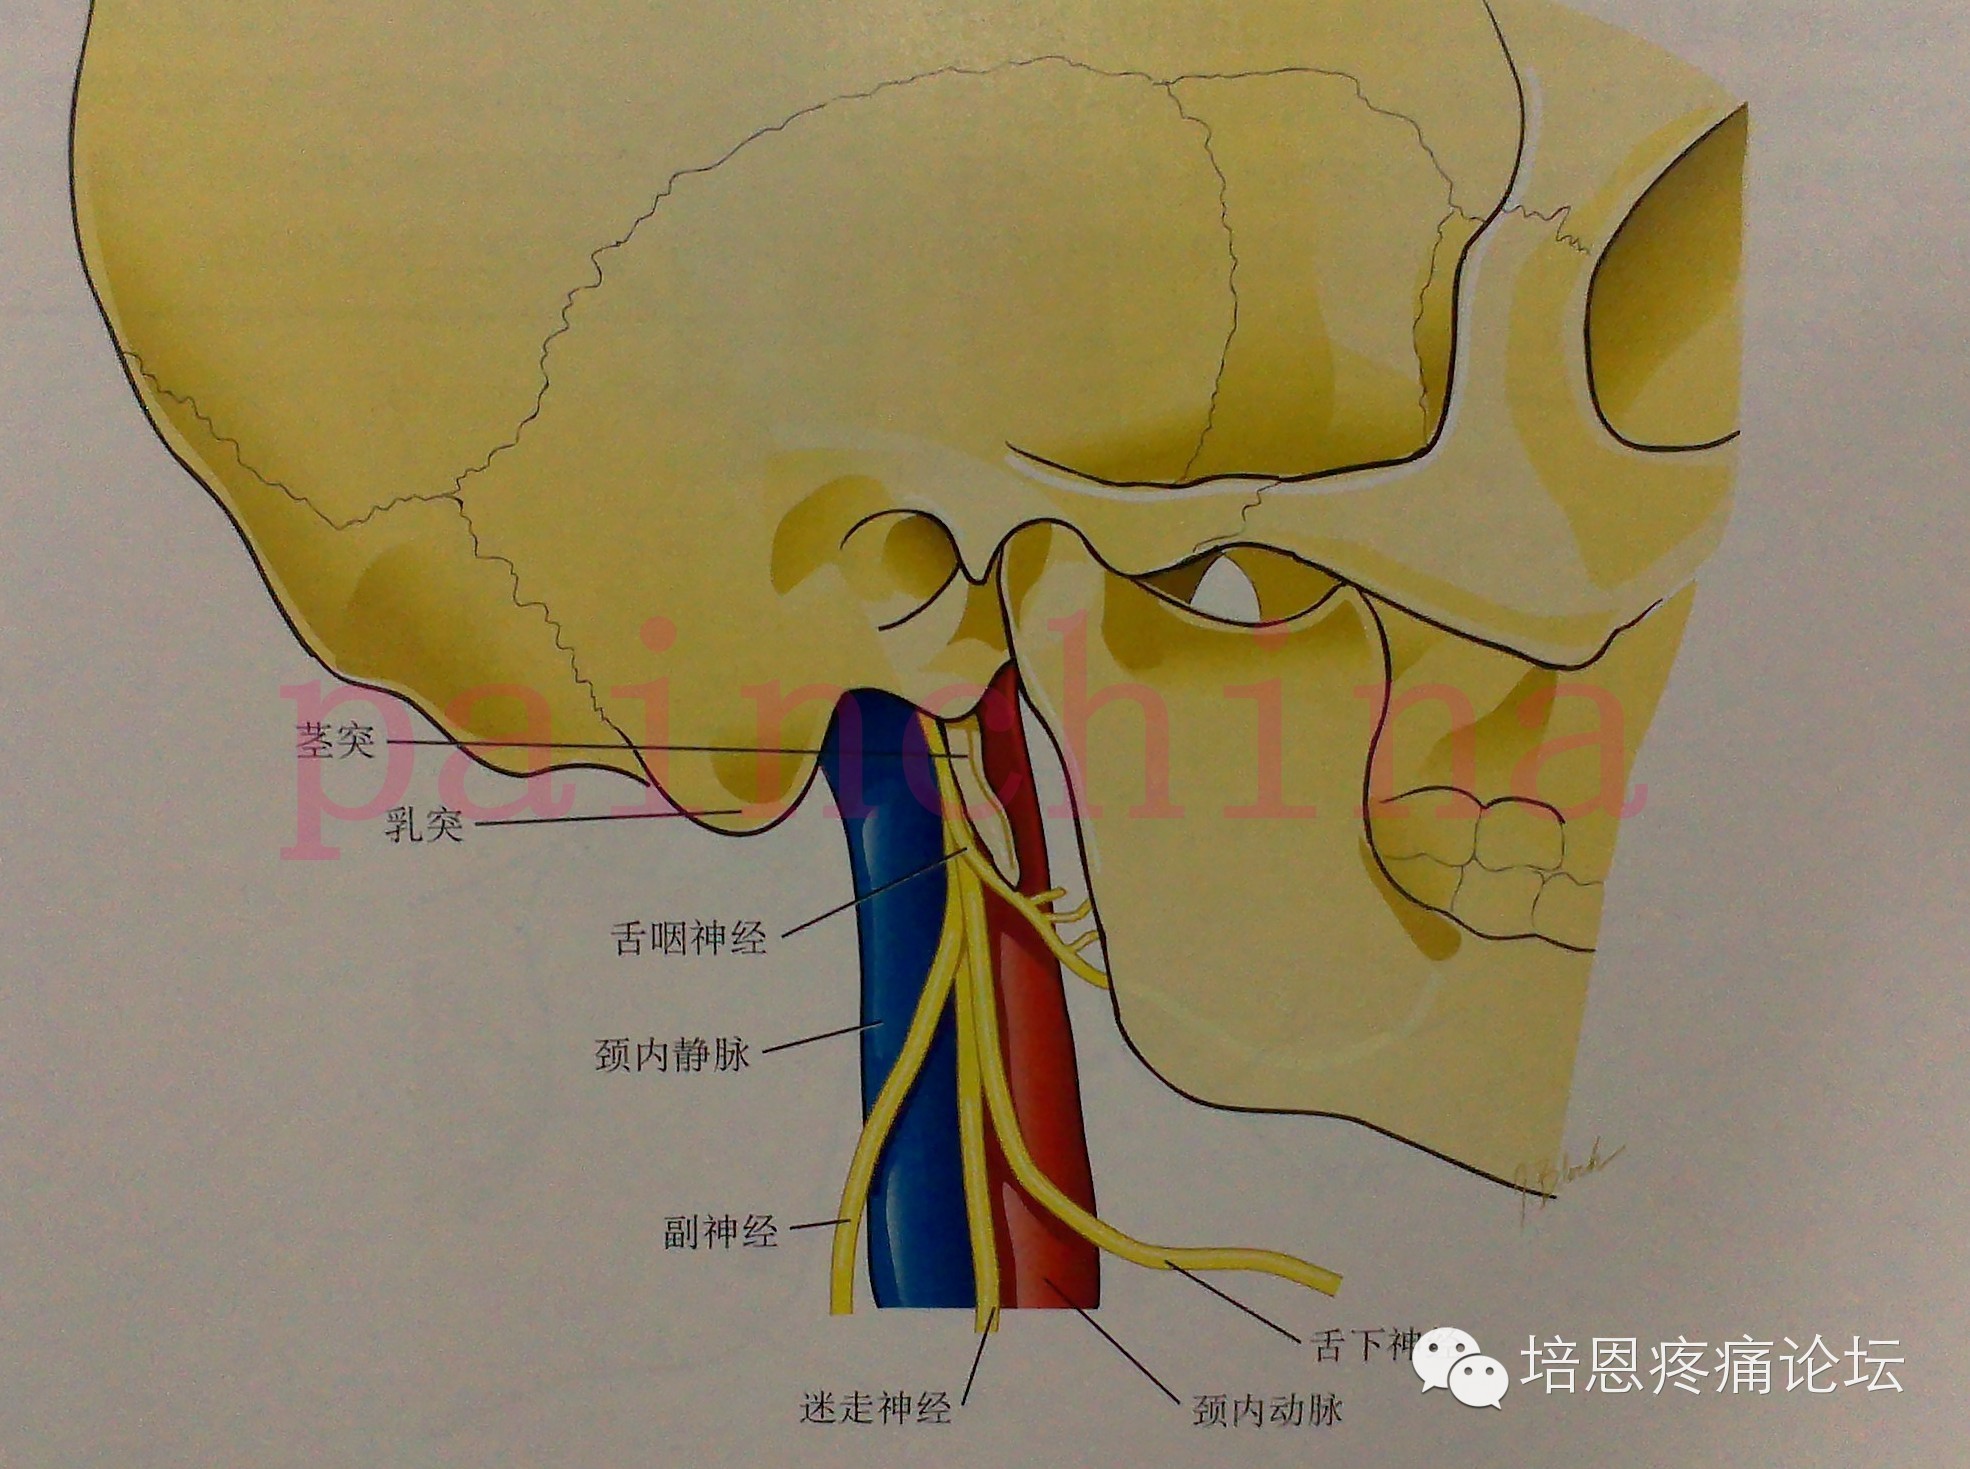 (2)应用解剖:舌咽神经起源于延髓外侧面,经颈静脉孔,同迷走神经和副